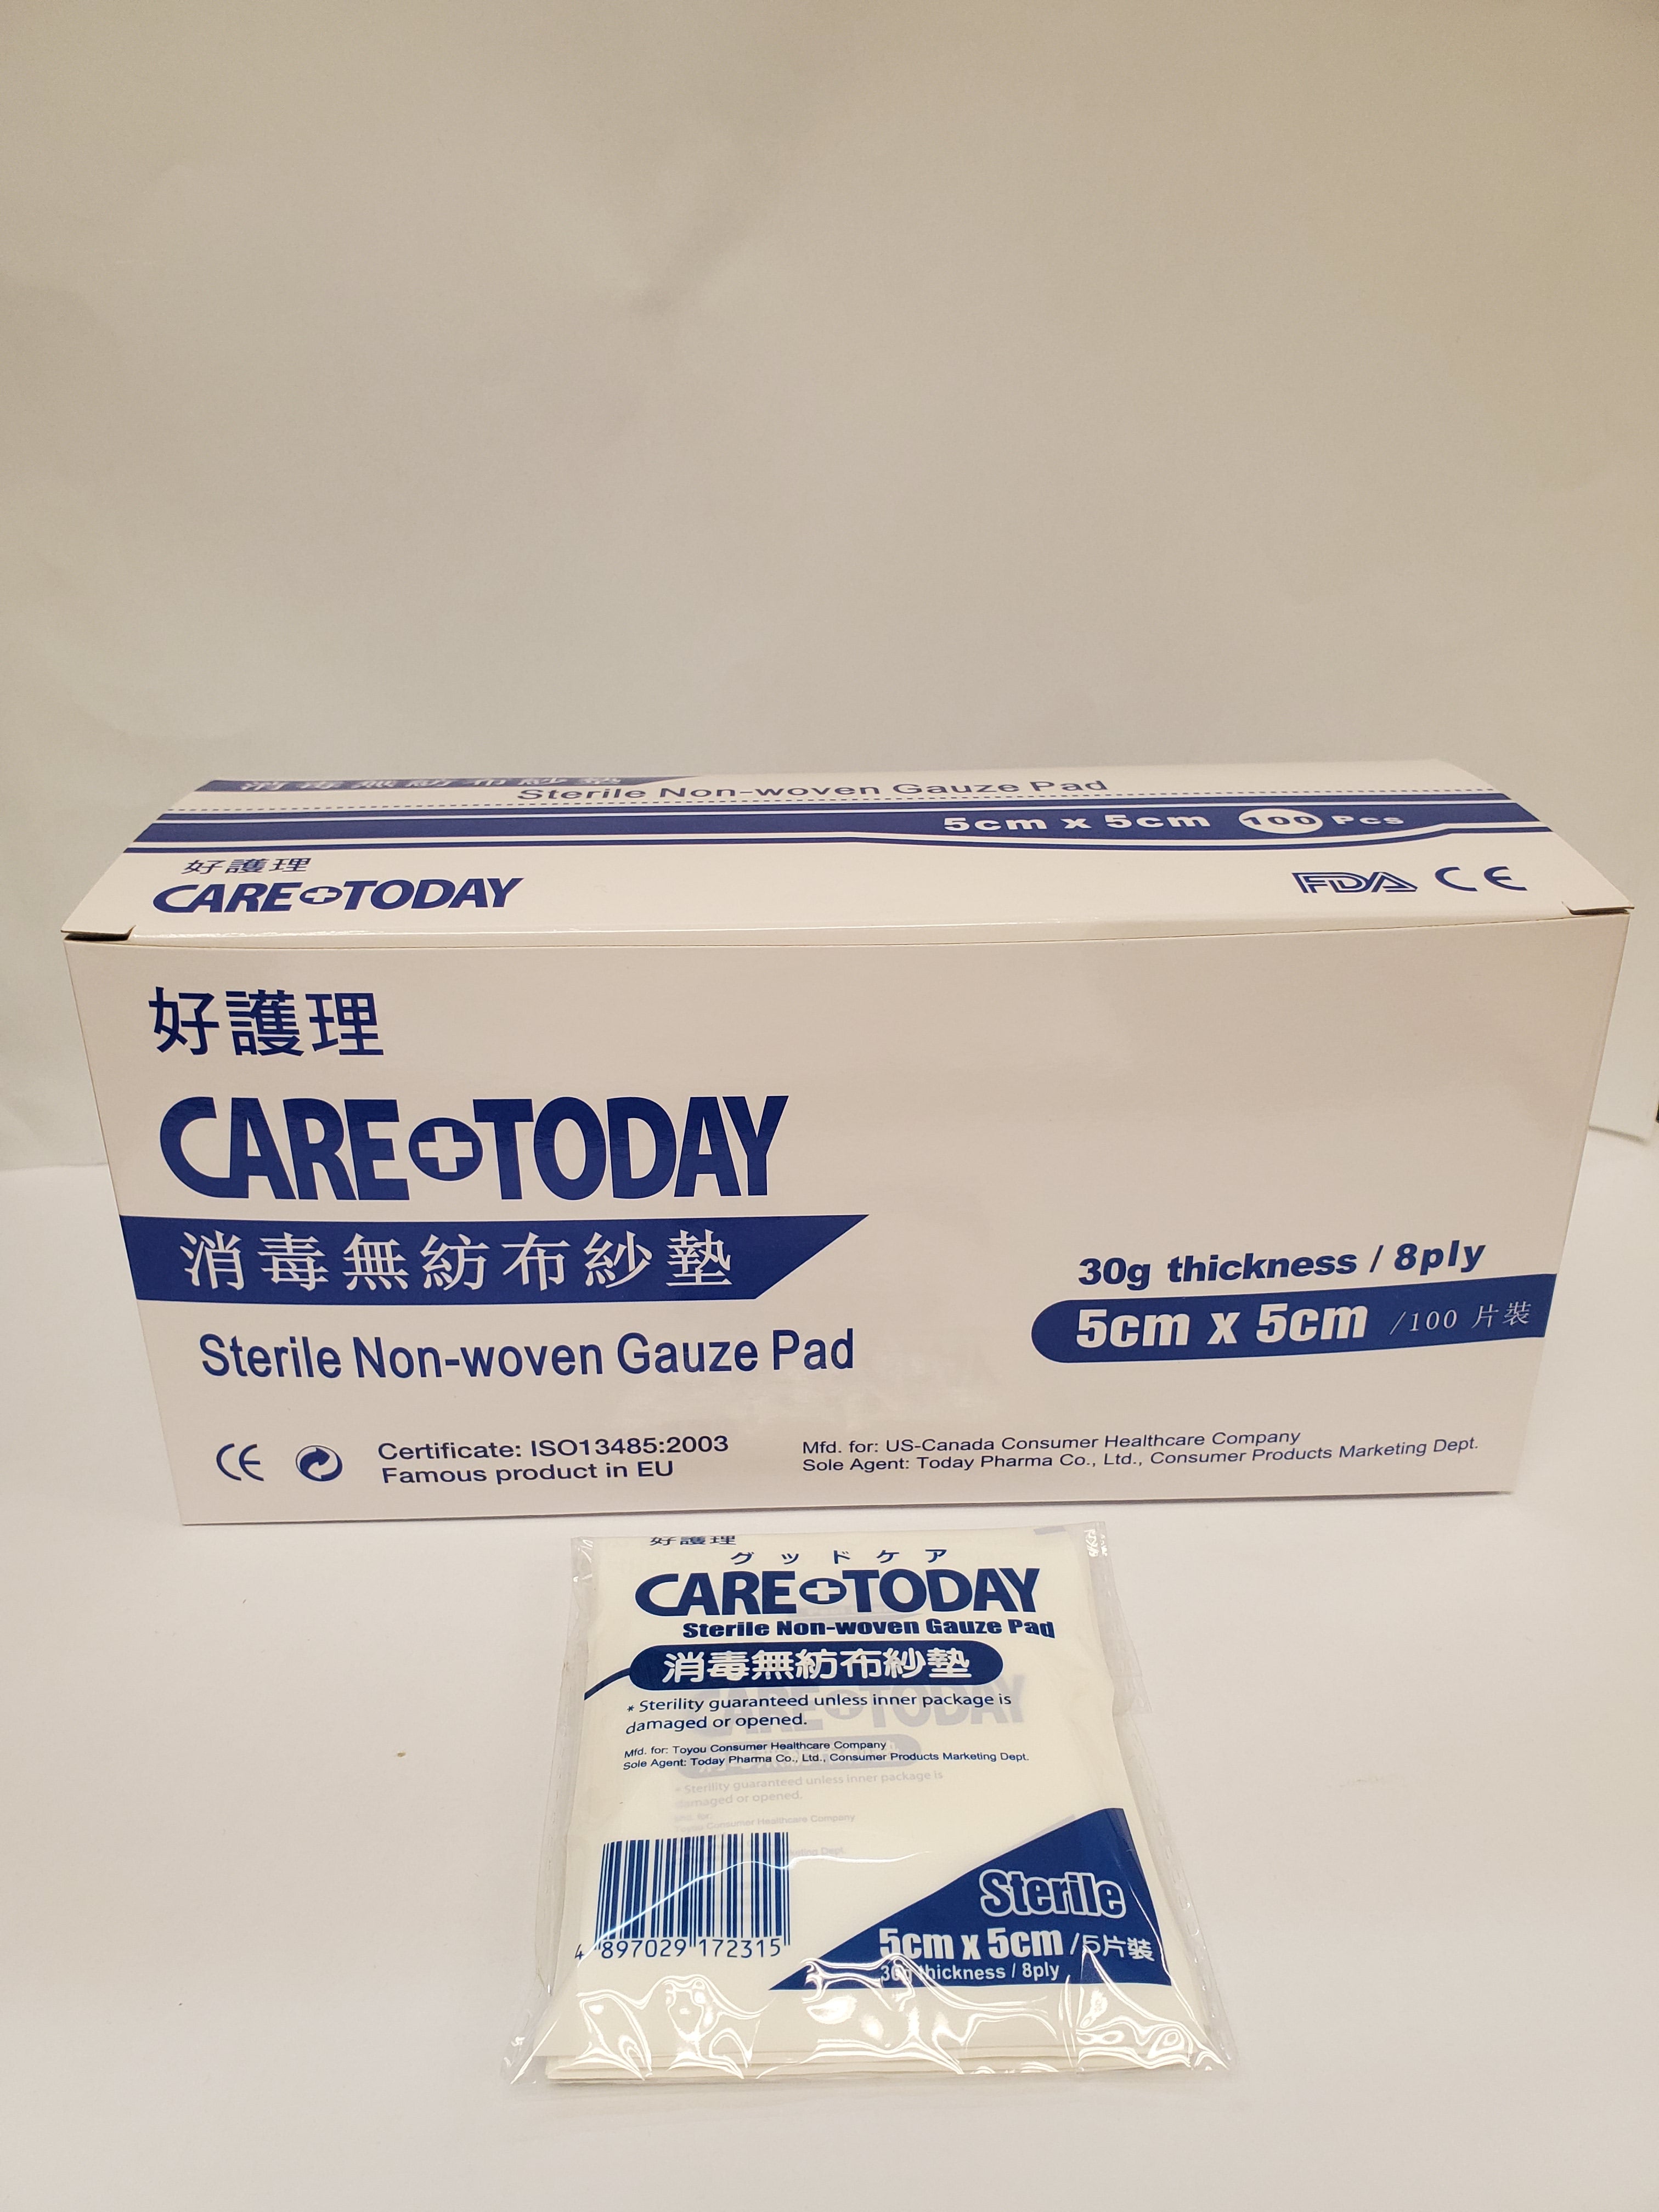 CareToday Sterile Non-Woven Gauze Pad